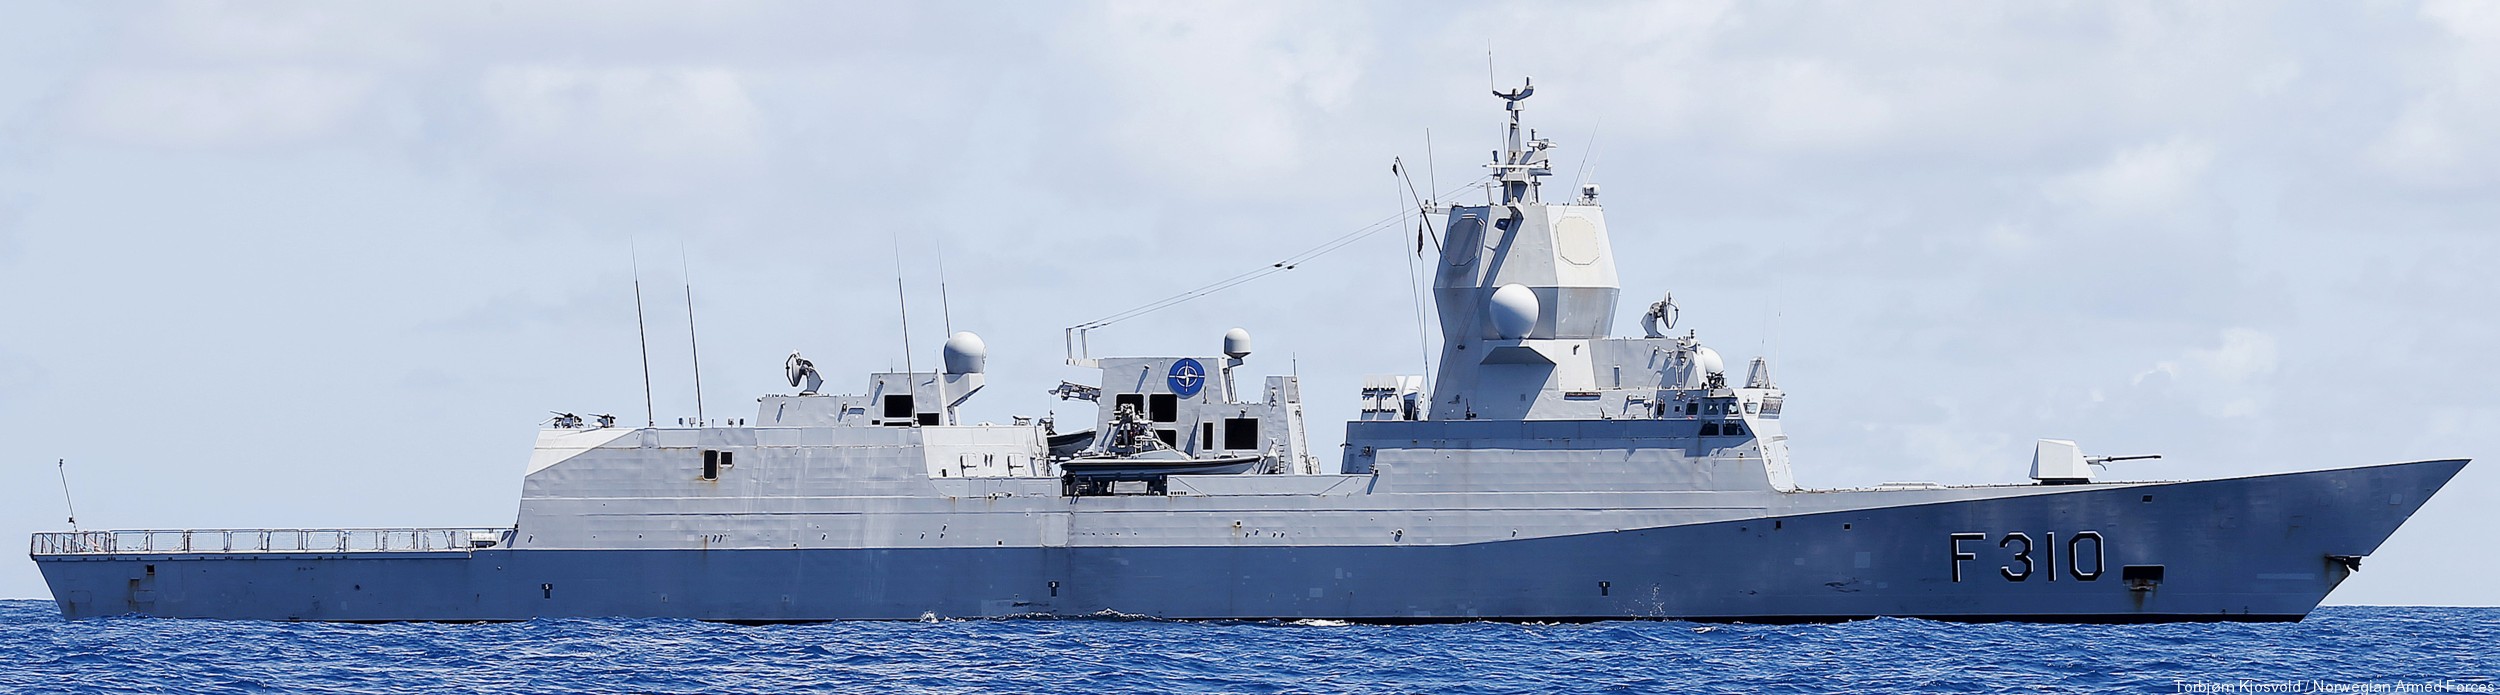 f-310 fridtjof nansen hnoms knm frigate royal norwegian navy sjoforsvaret 27